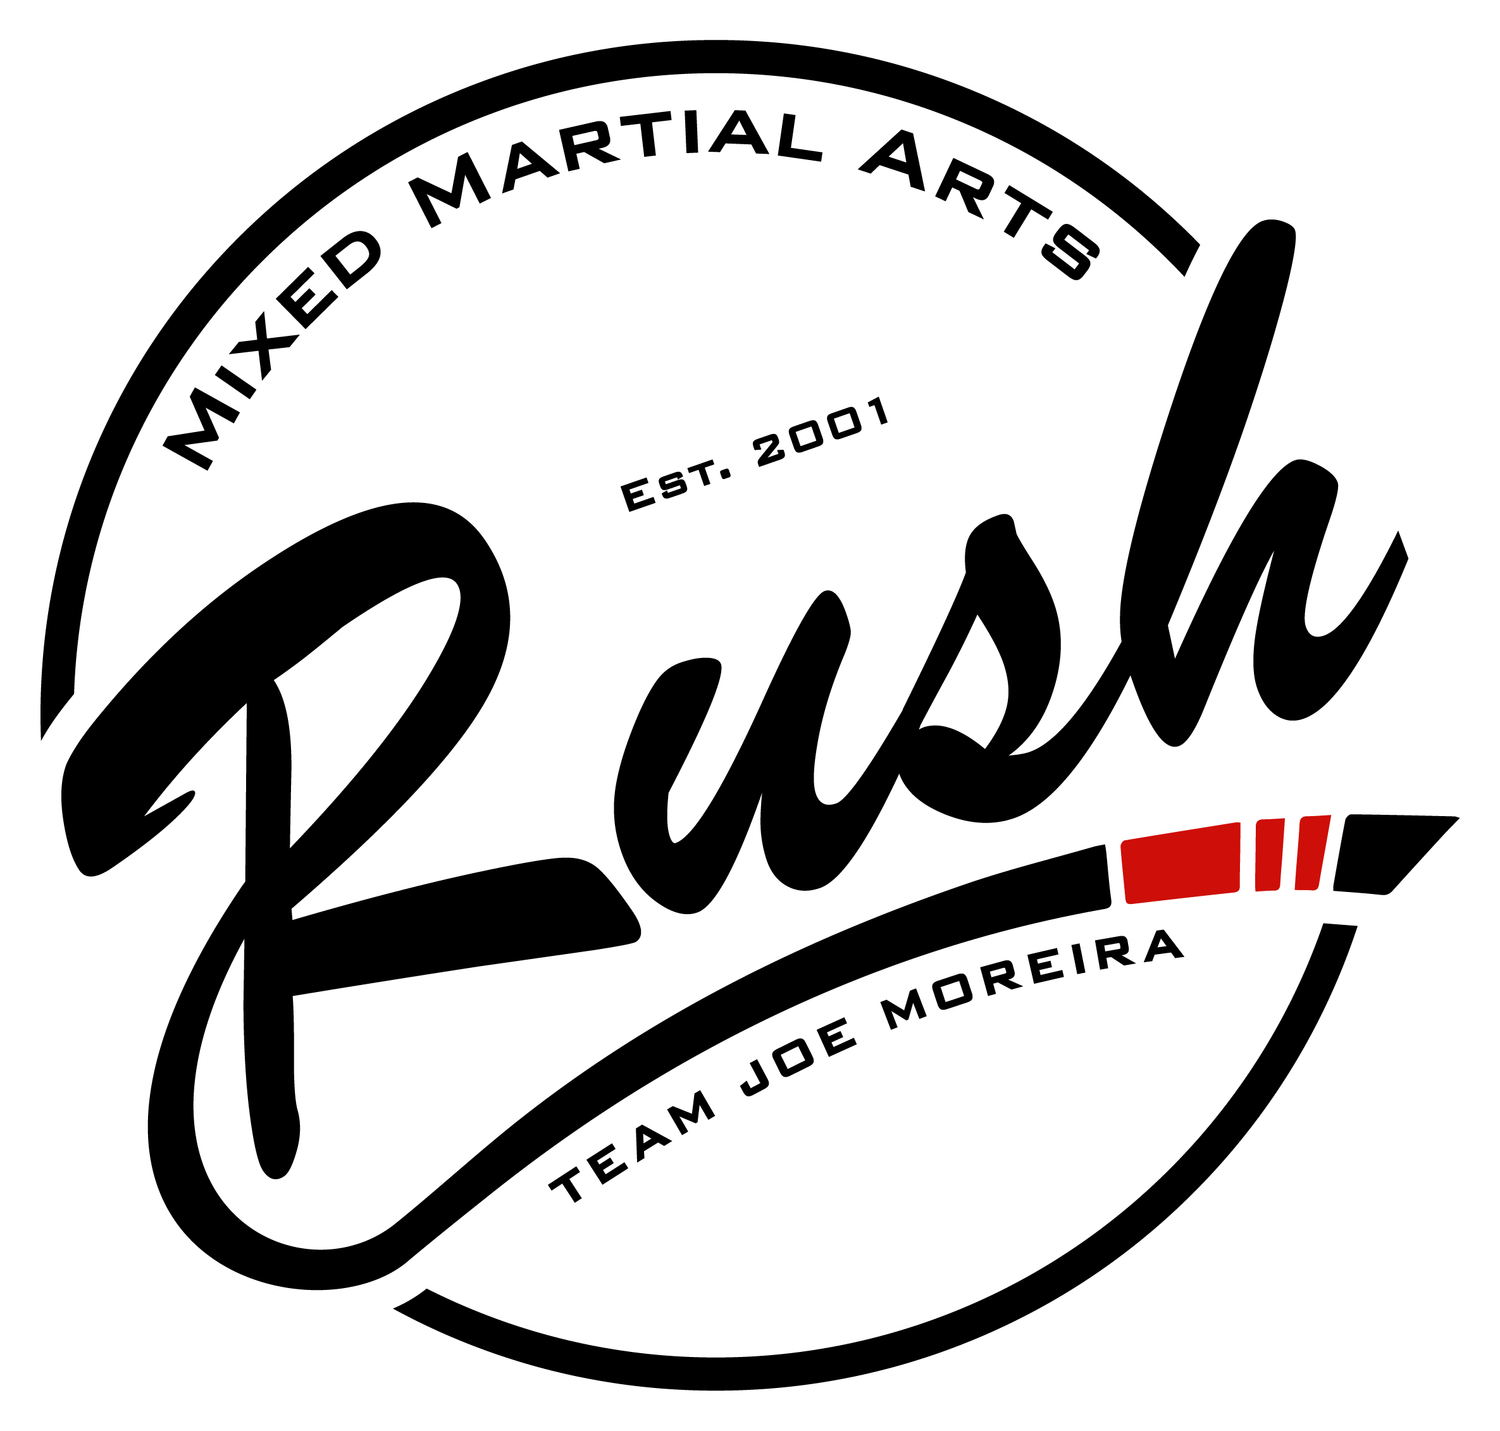 RUSH Mixed Martial Arts